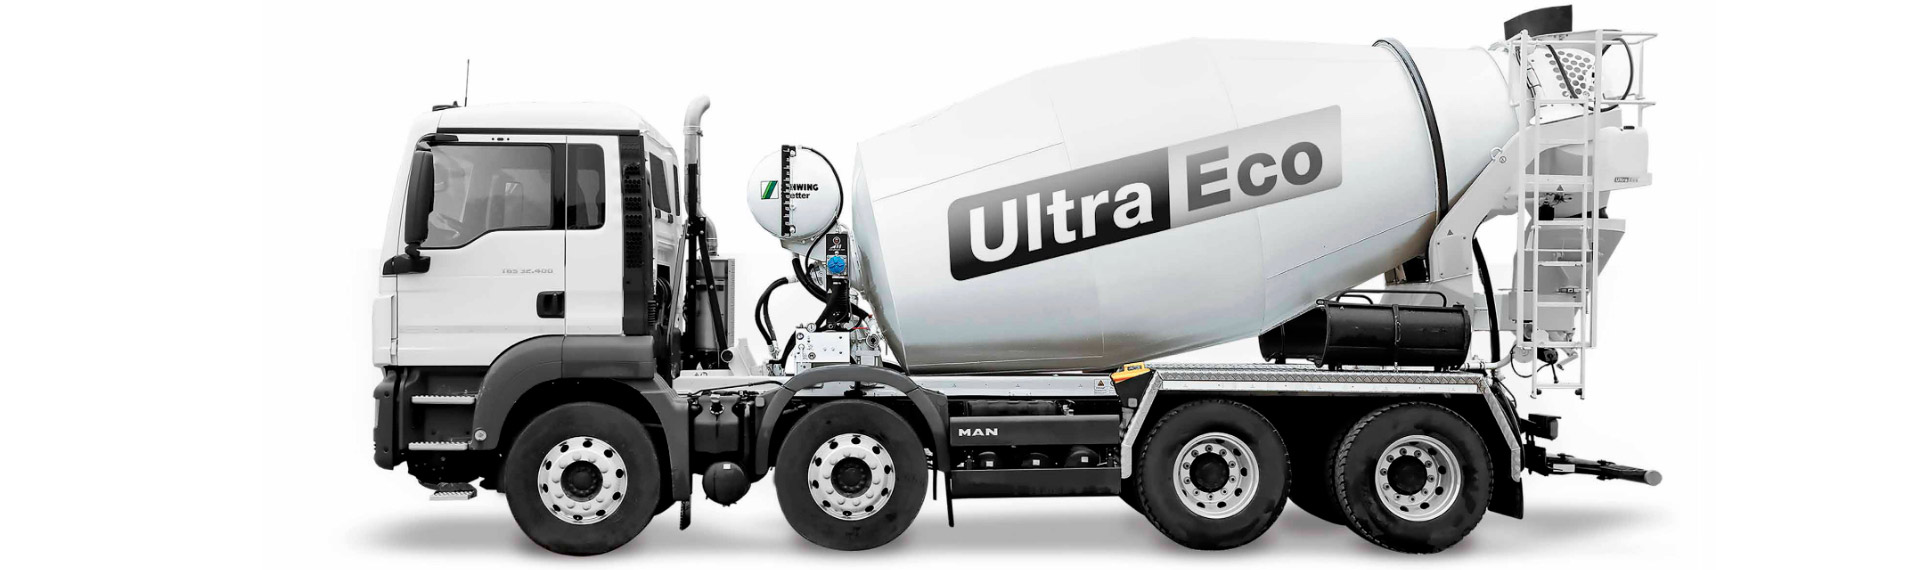 Caminhão betoneira Ultra-Eco preto e branco fabricado com a chapa antidesgaste Hardox® altamente resistente à abrasão